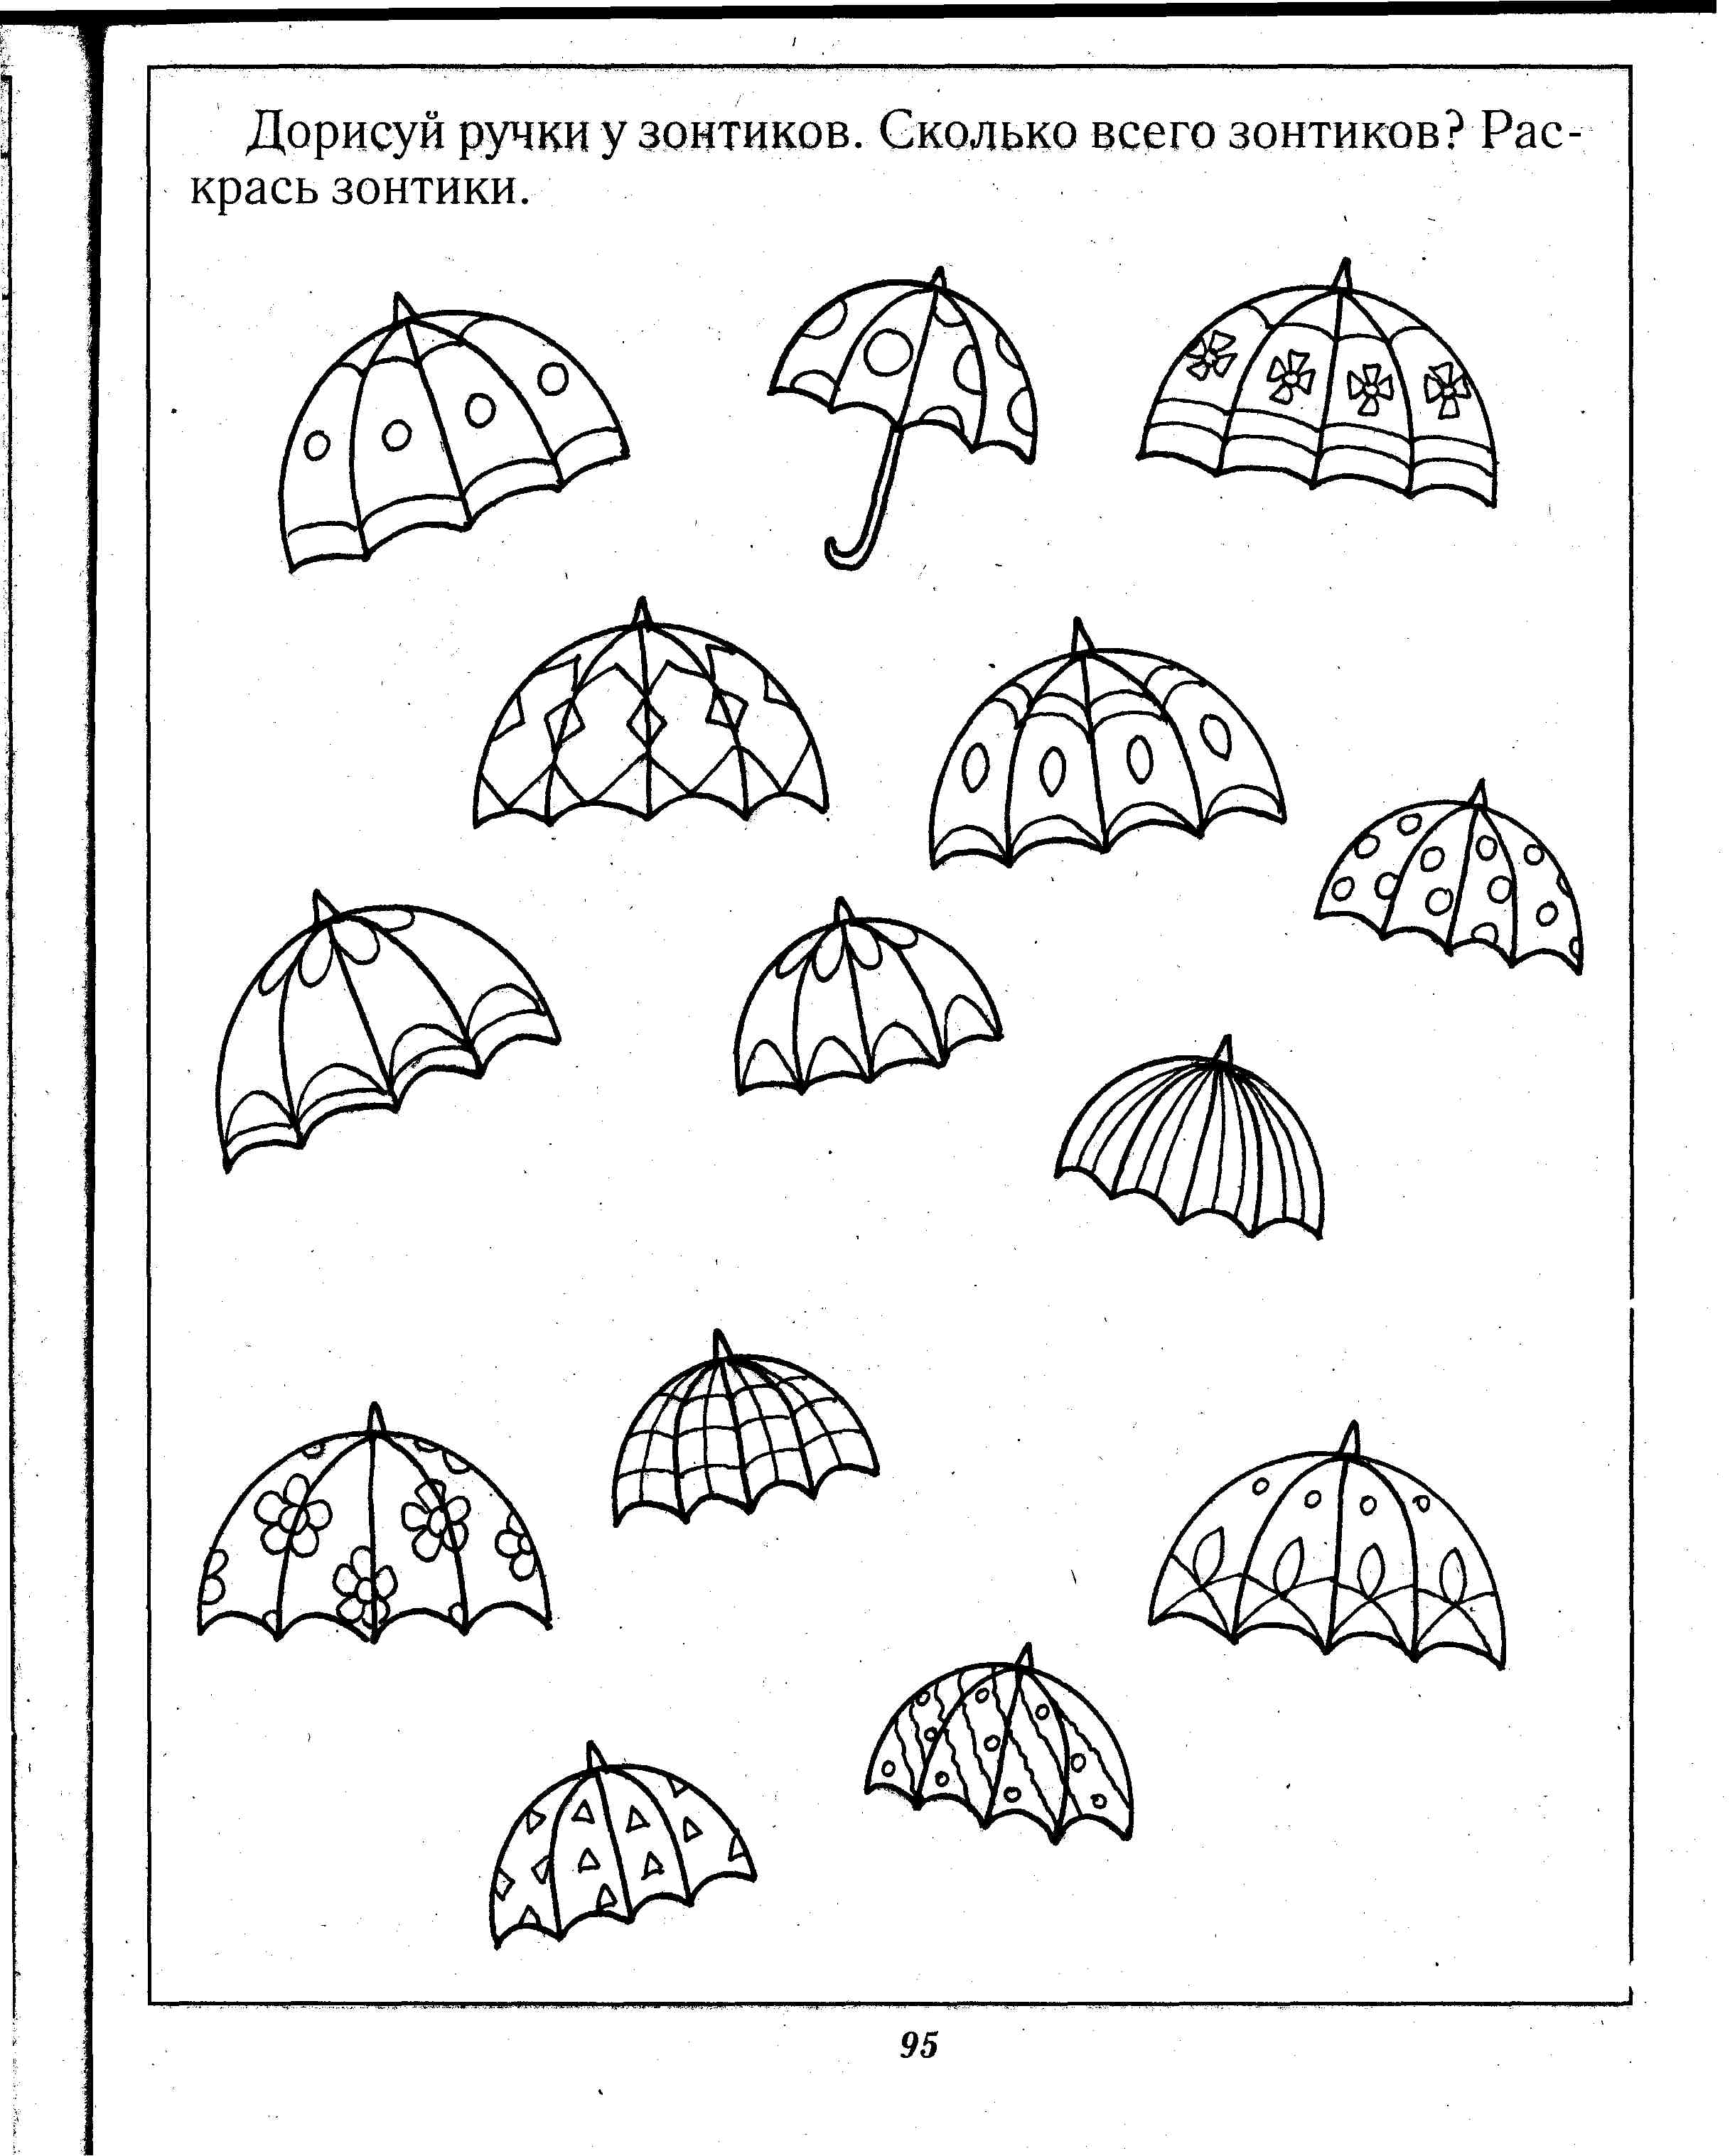 Задания с зонтиками для дошкольников